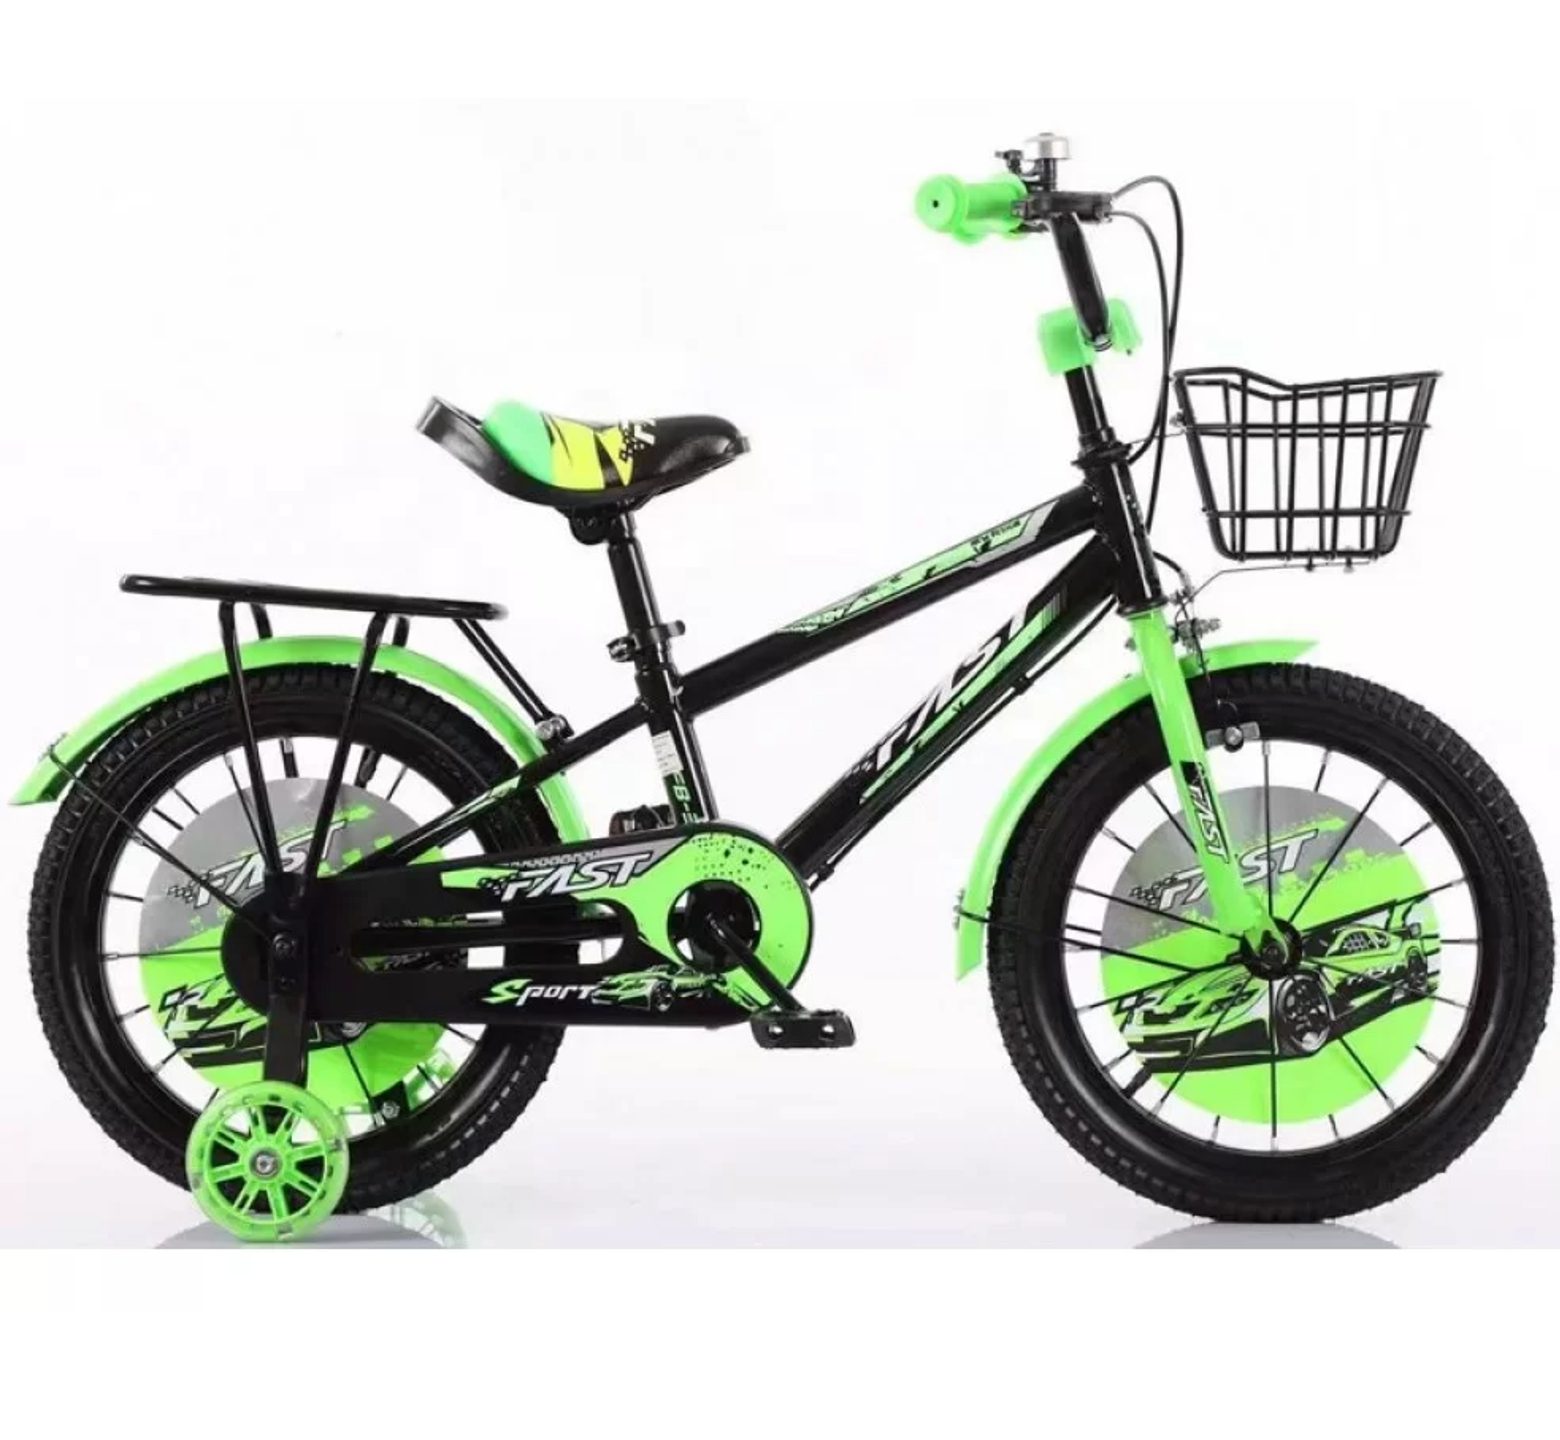 Ποδήλατο Fast Sport 12 - 16 ιντσών με καλάθι και σχάρα σε μαύρο πράσινο χρώμα